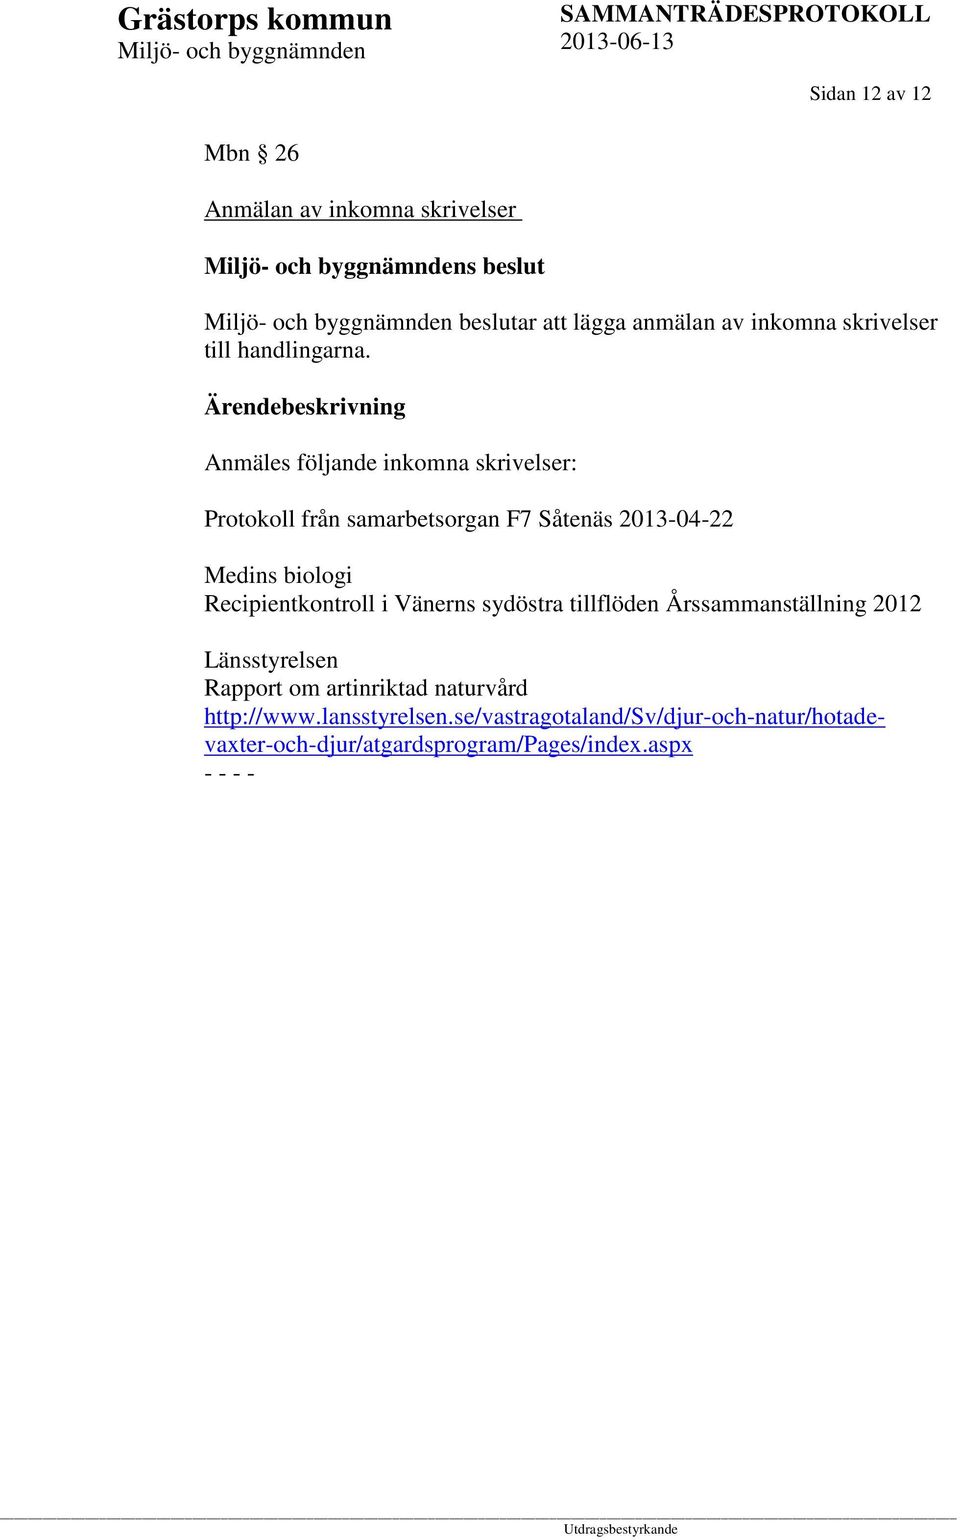 Anmäles följande inkomna skrivelser: Protokoll från samarbetsorgan F7 Såtenäs 2013-04-22 Medins biologi